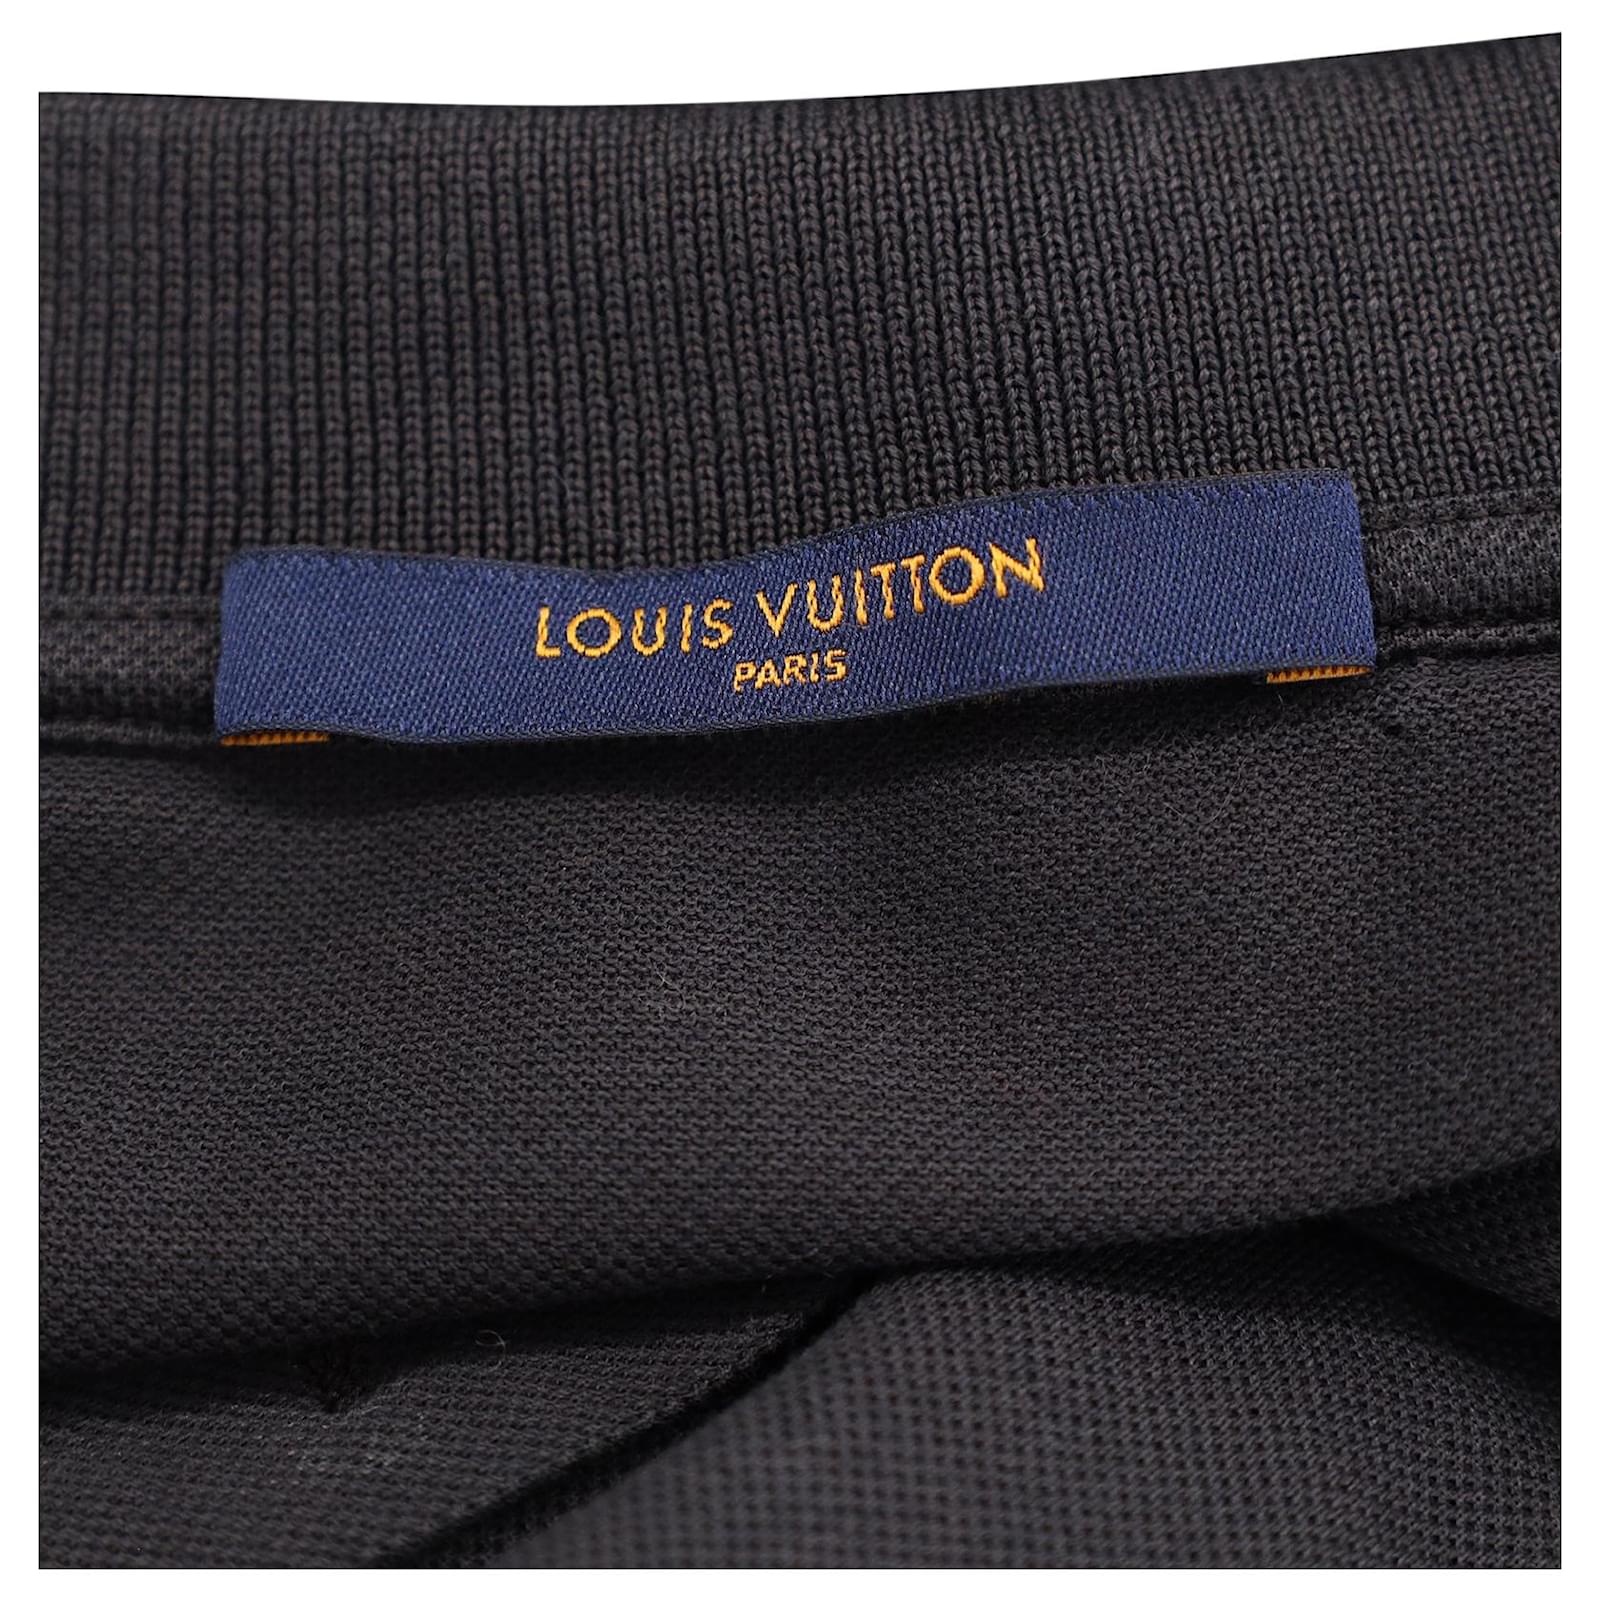 Louis Vuitton, Shirts, Louis Vuitton Classic Damier Pique Black Polo